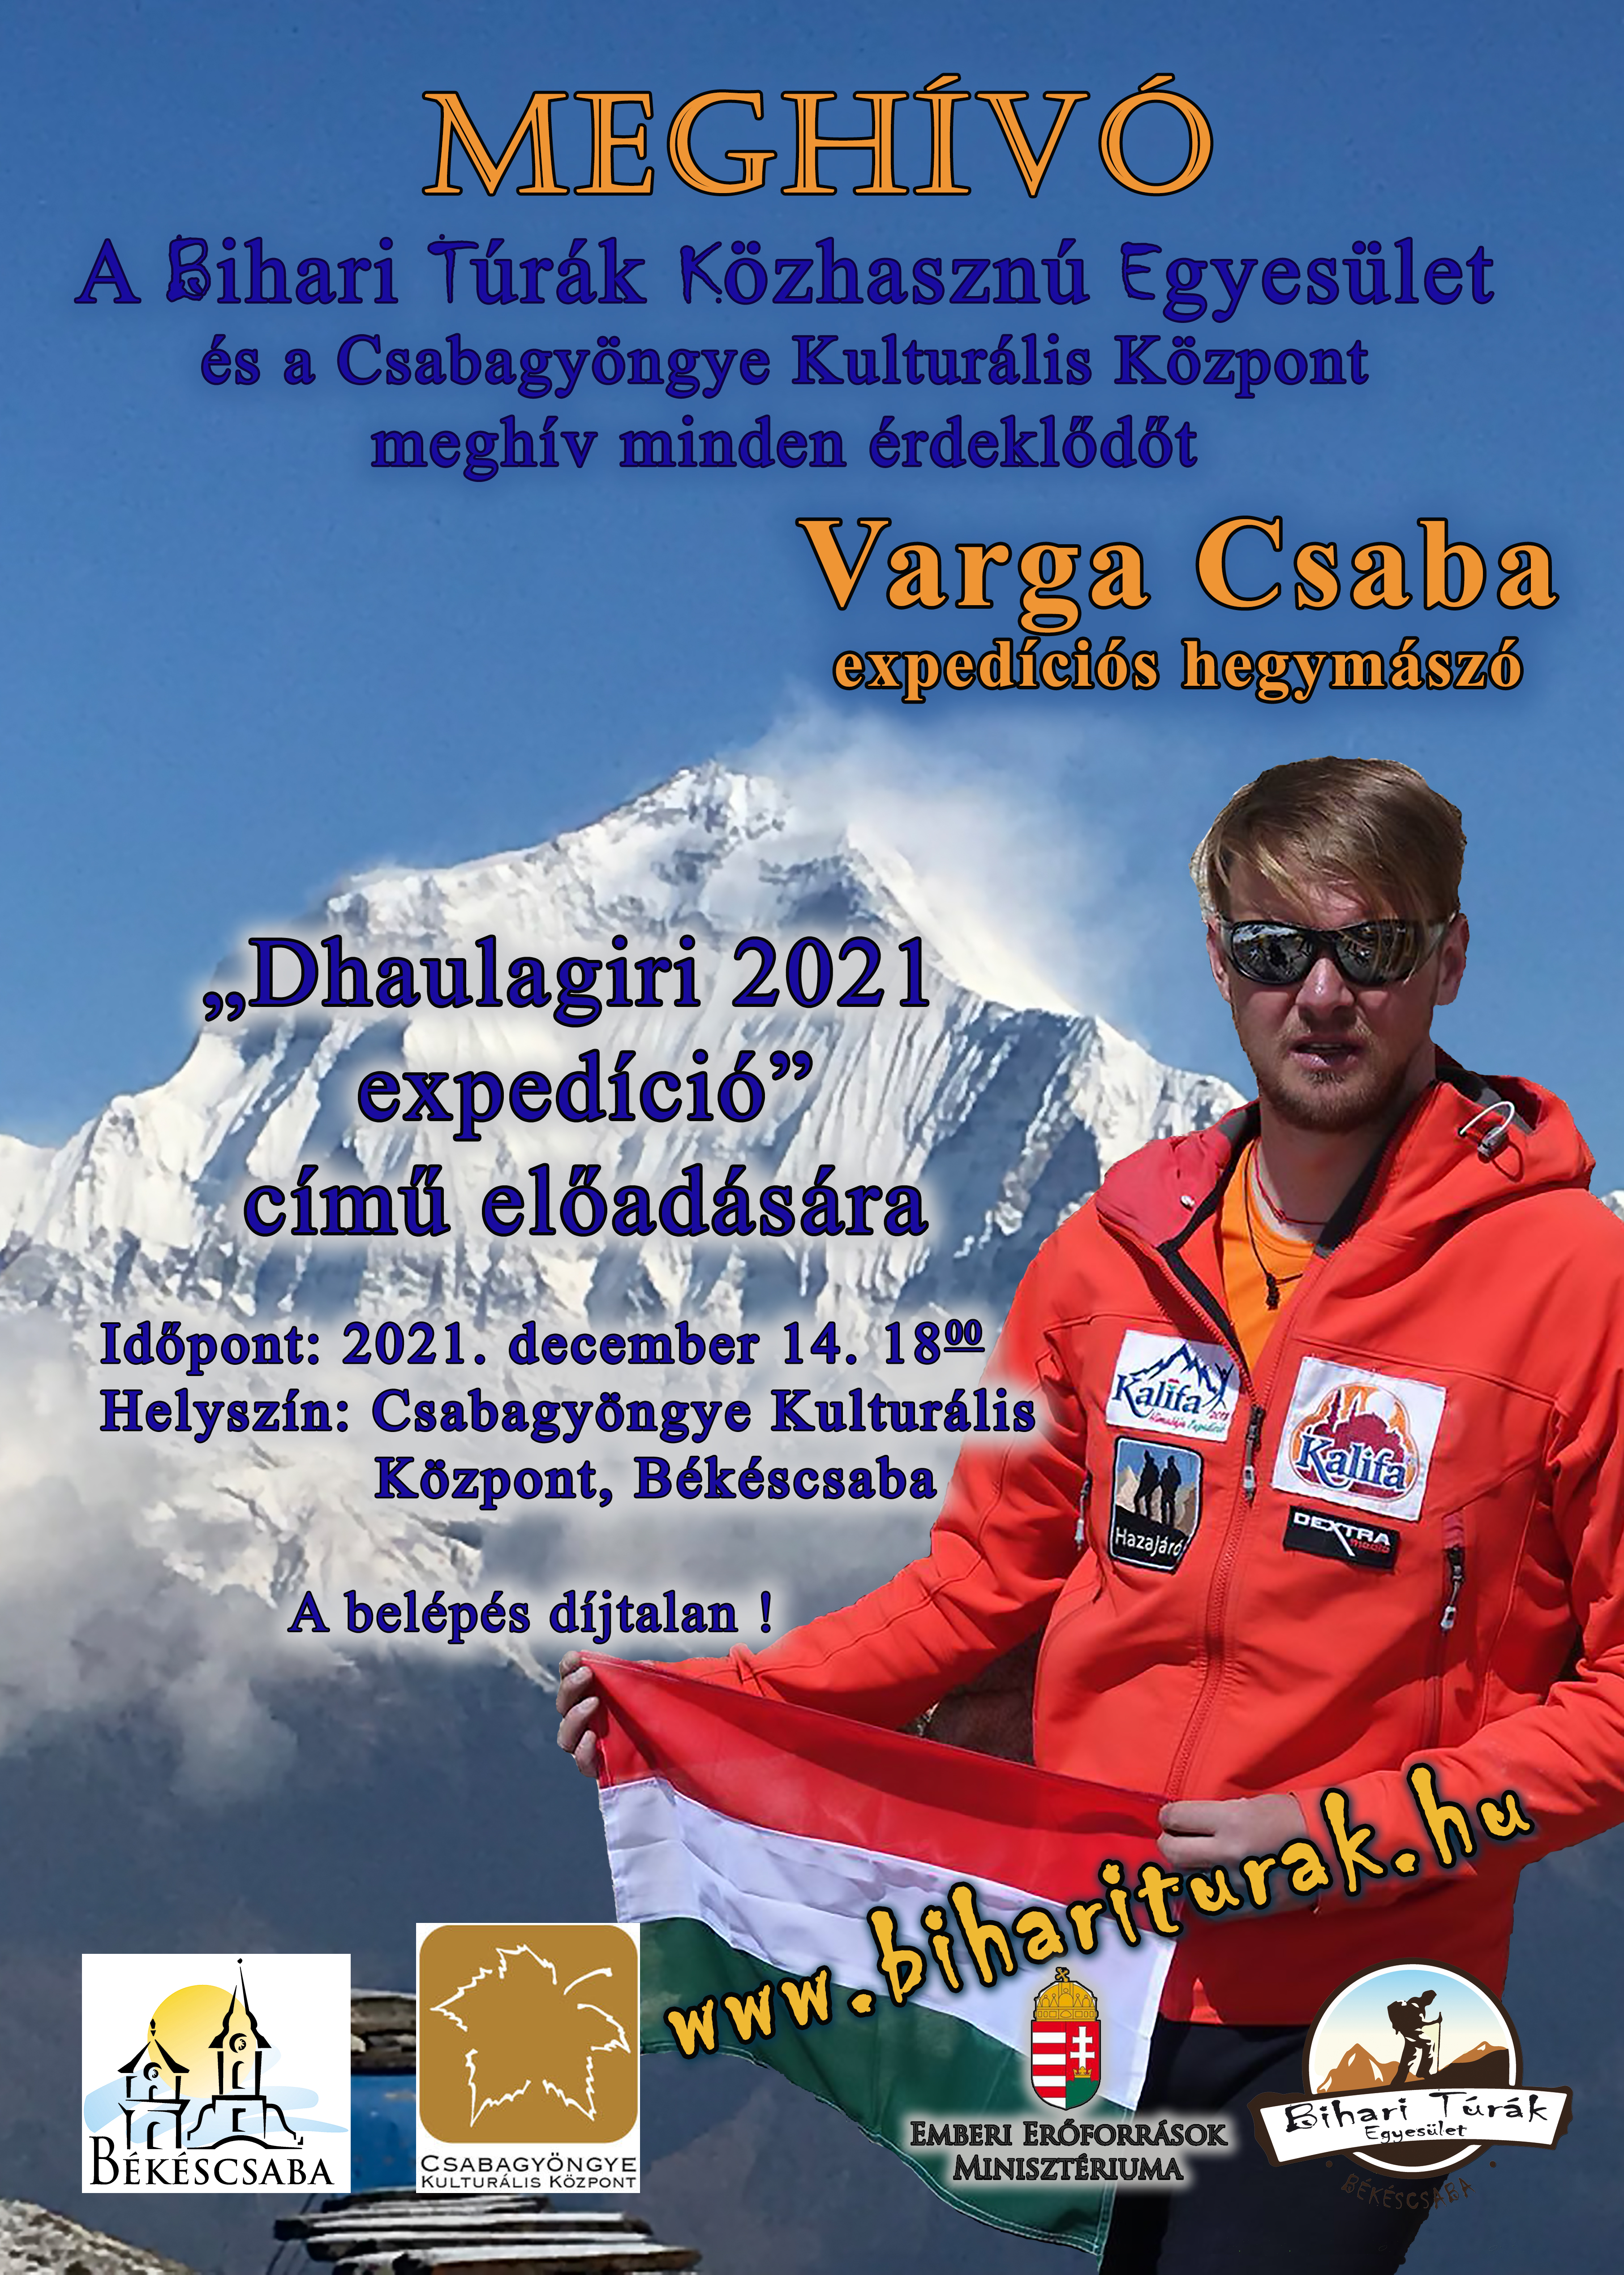  Varga Csaba plakát 